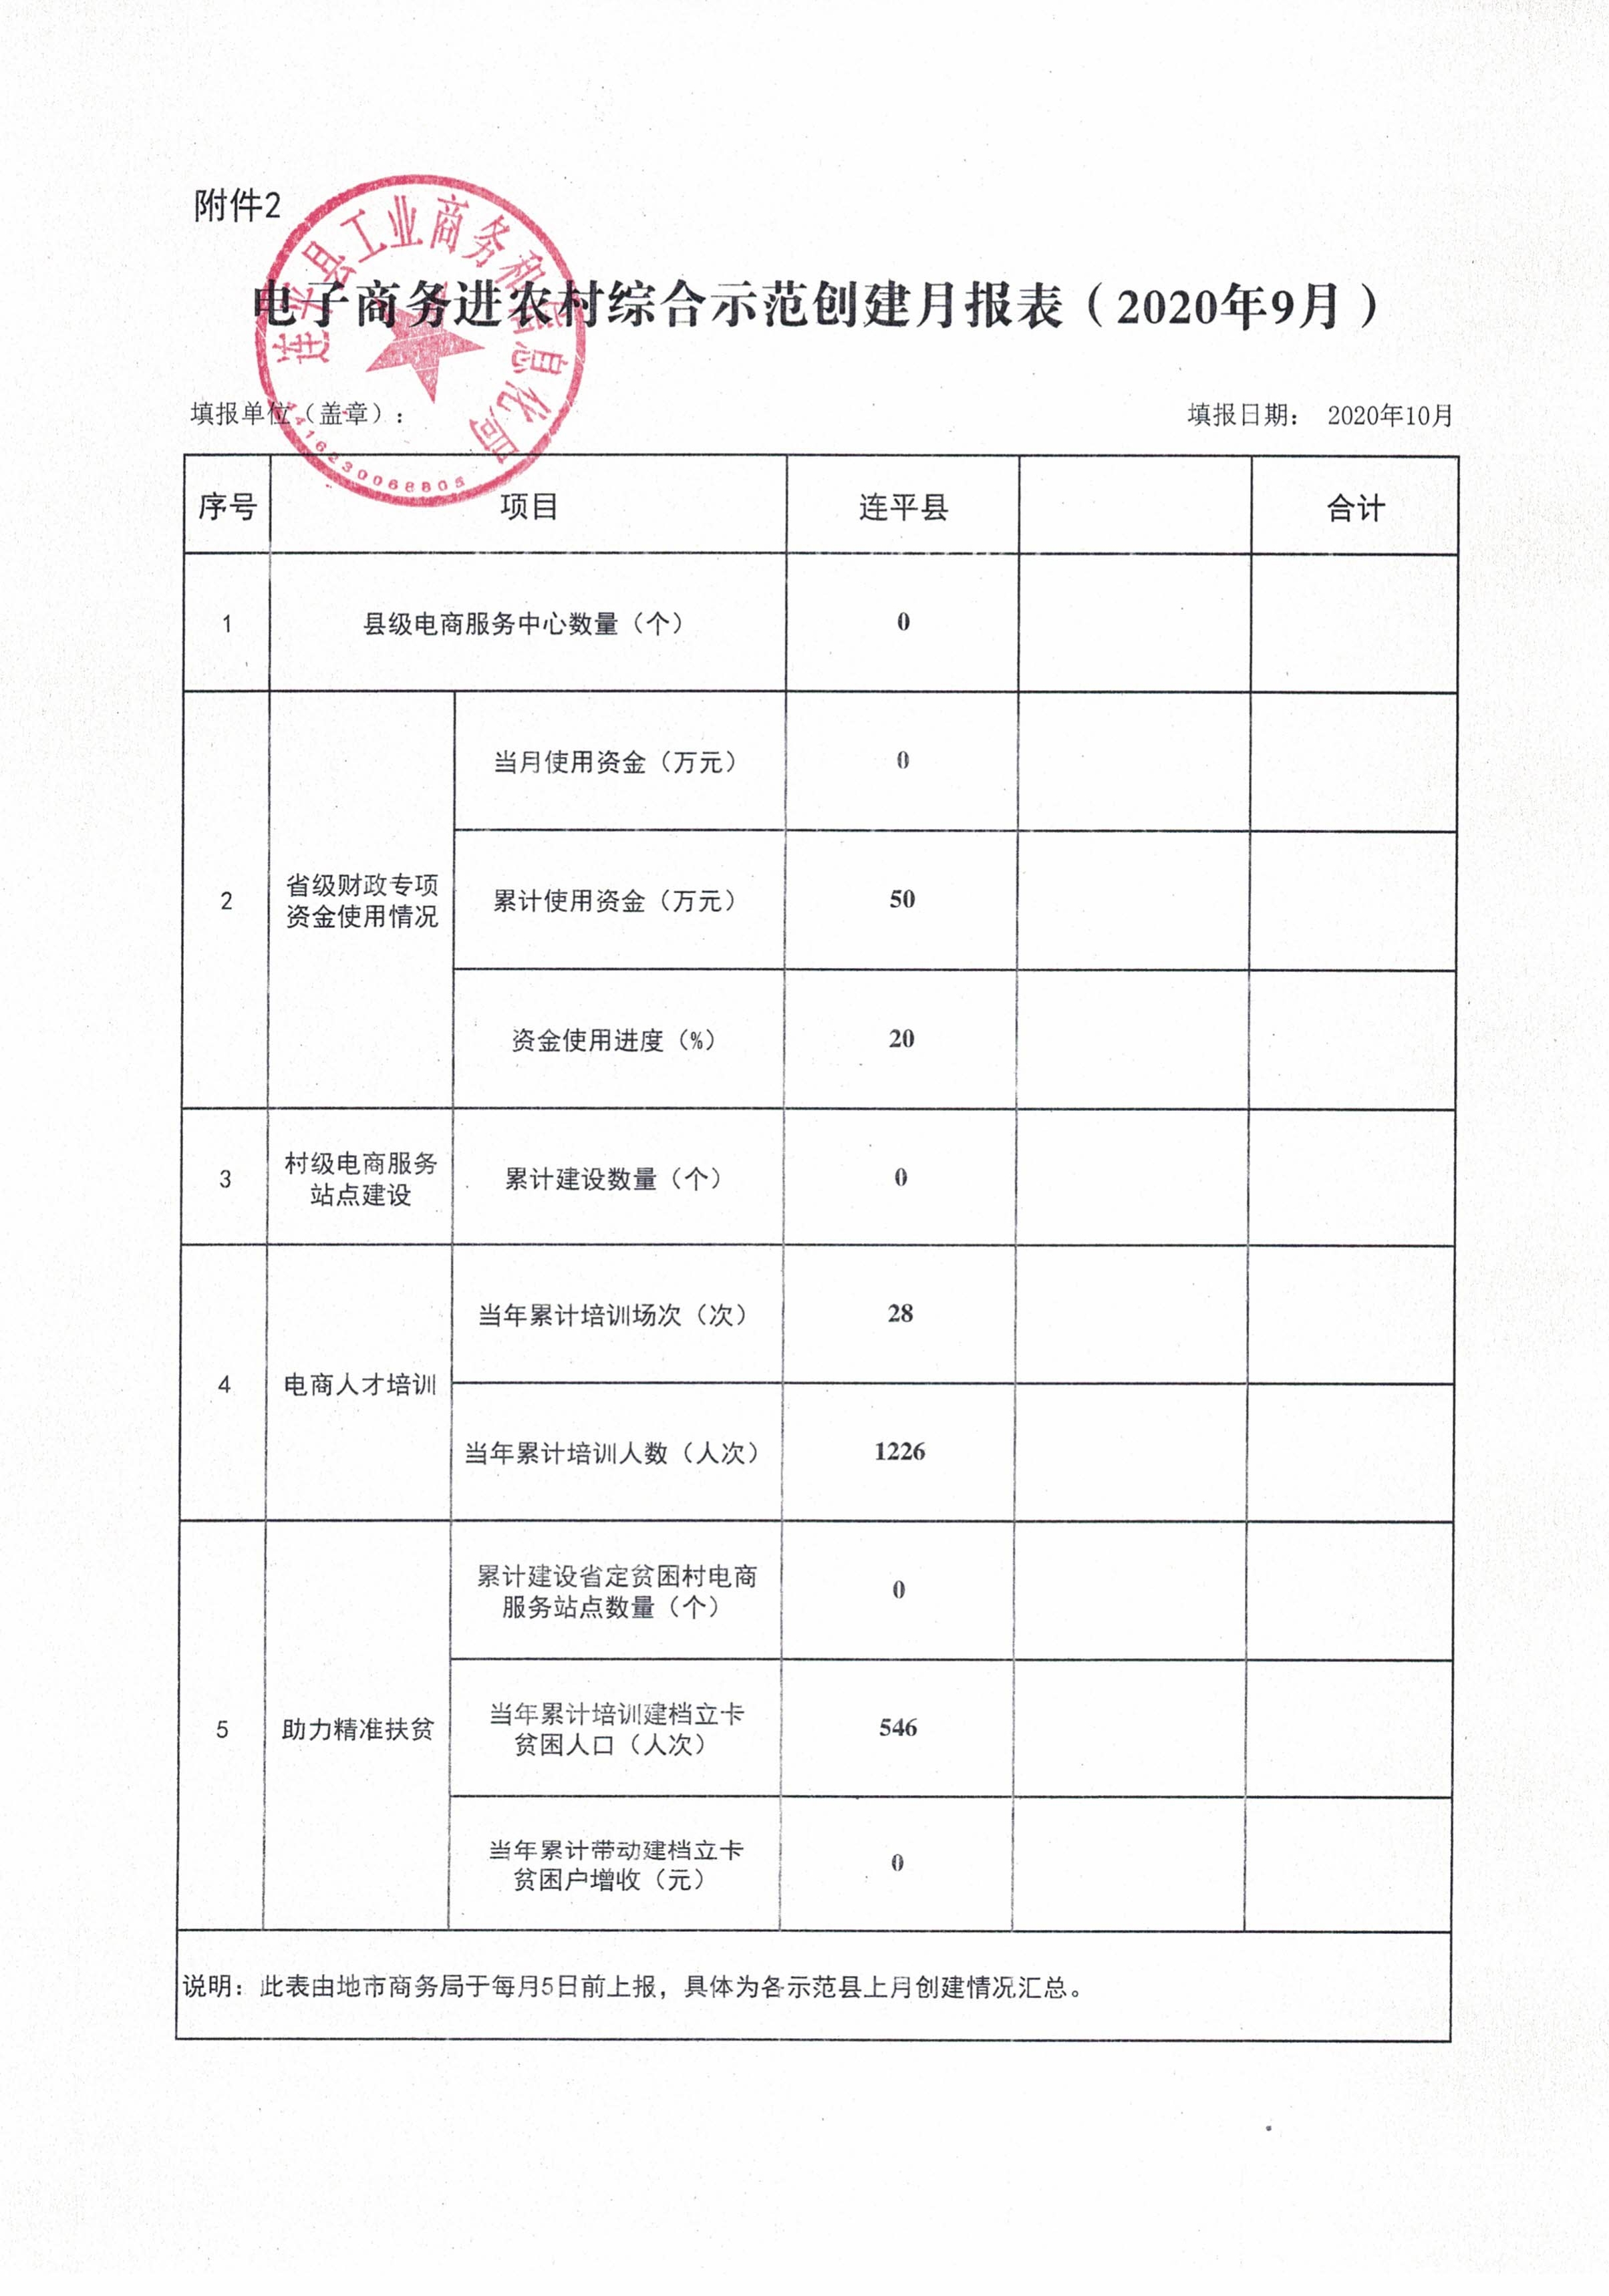 连平县省级电子商务进农村综合示范工作报表（202009）_0.jpg